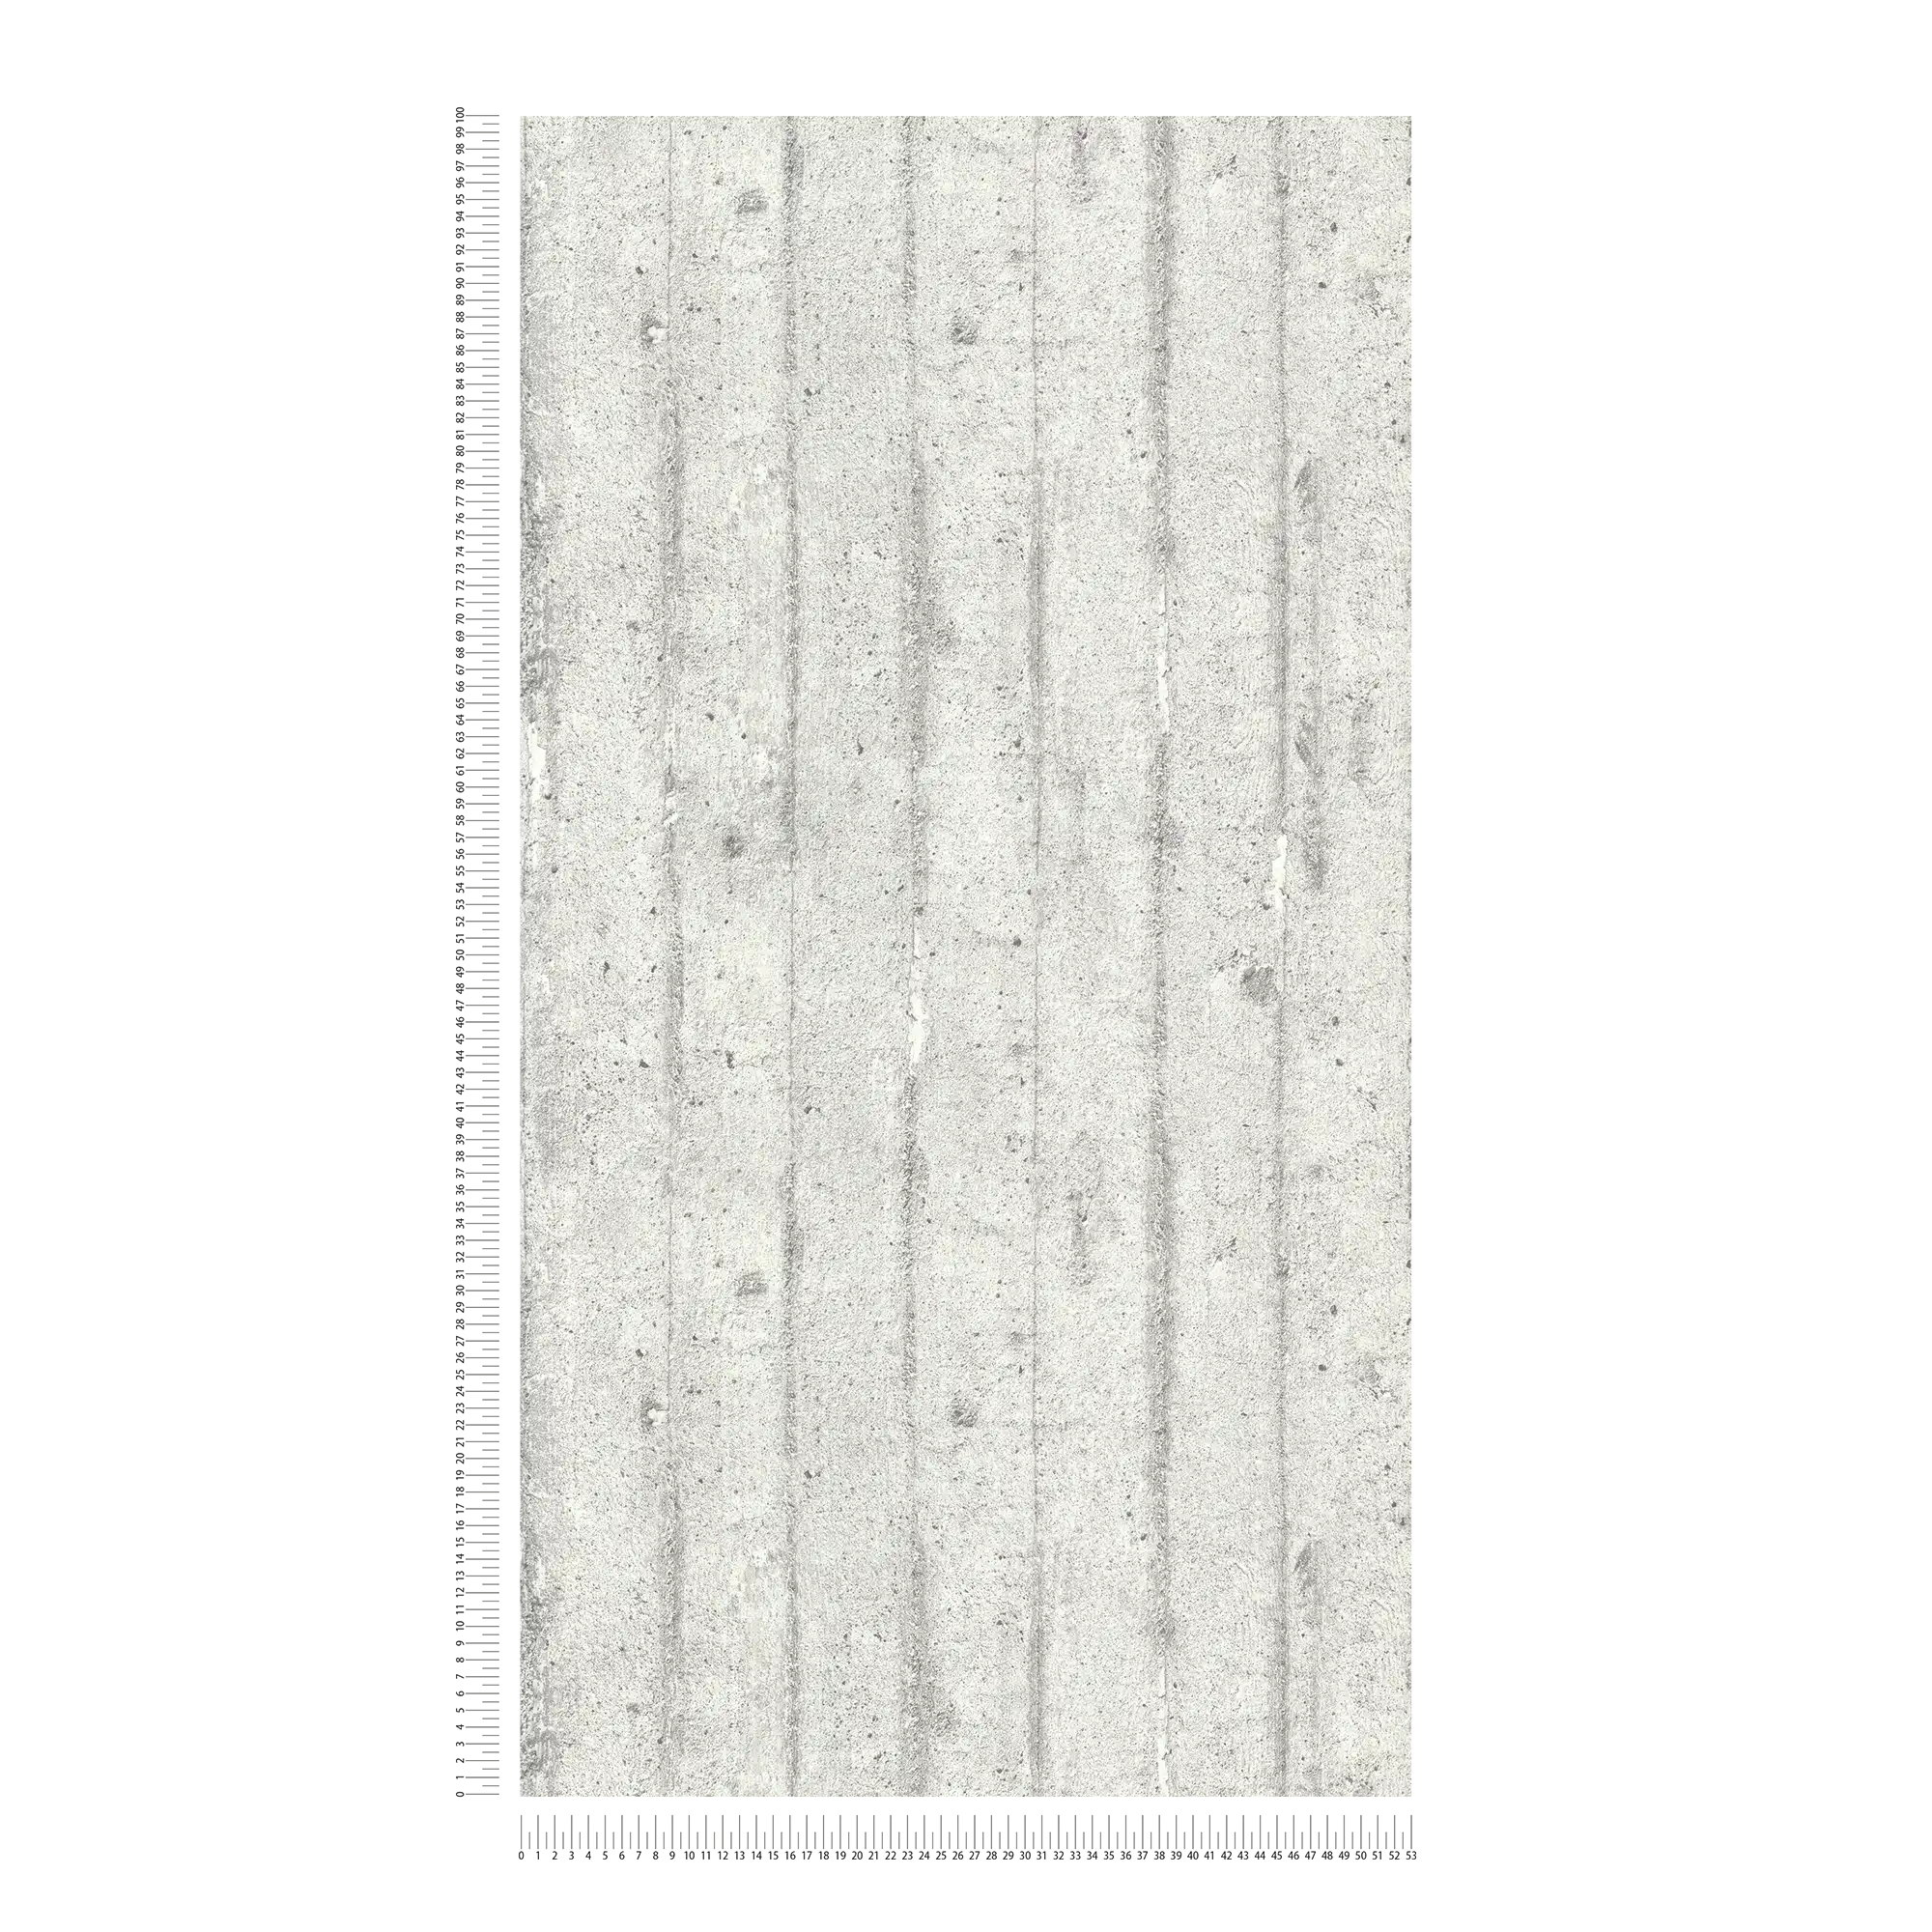             Betonlook behang, ruwe bekisting beton - grijs
        